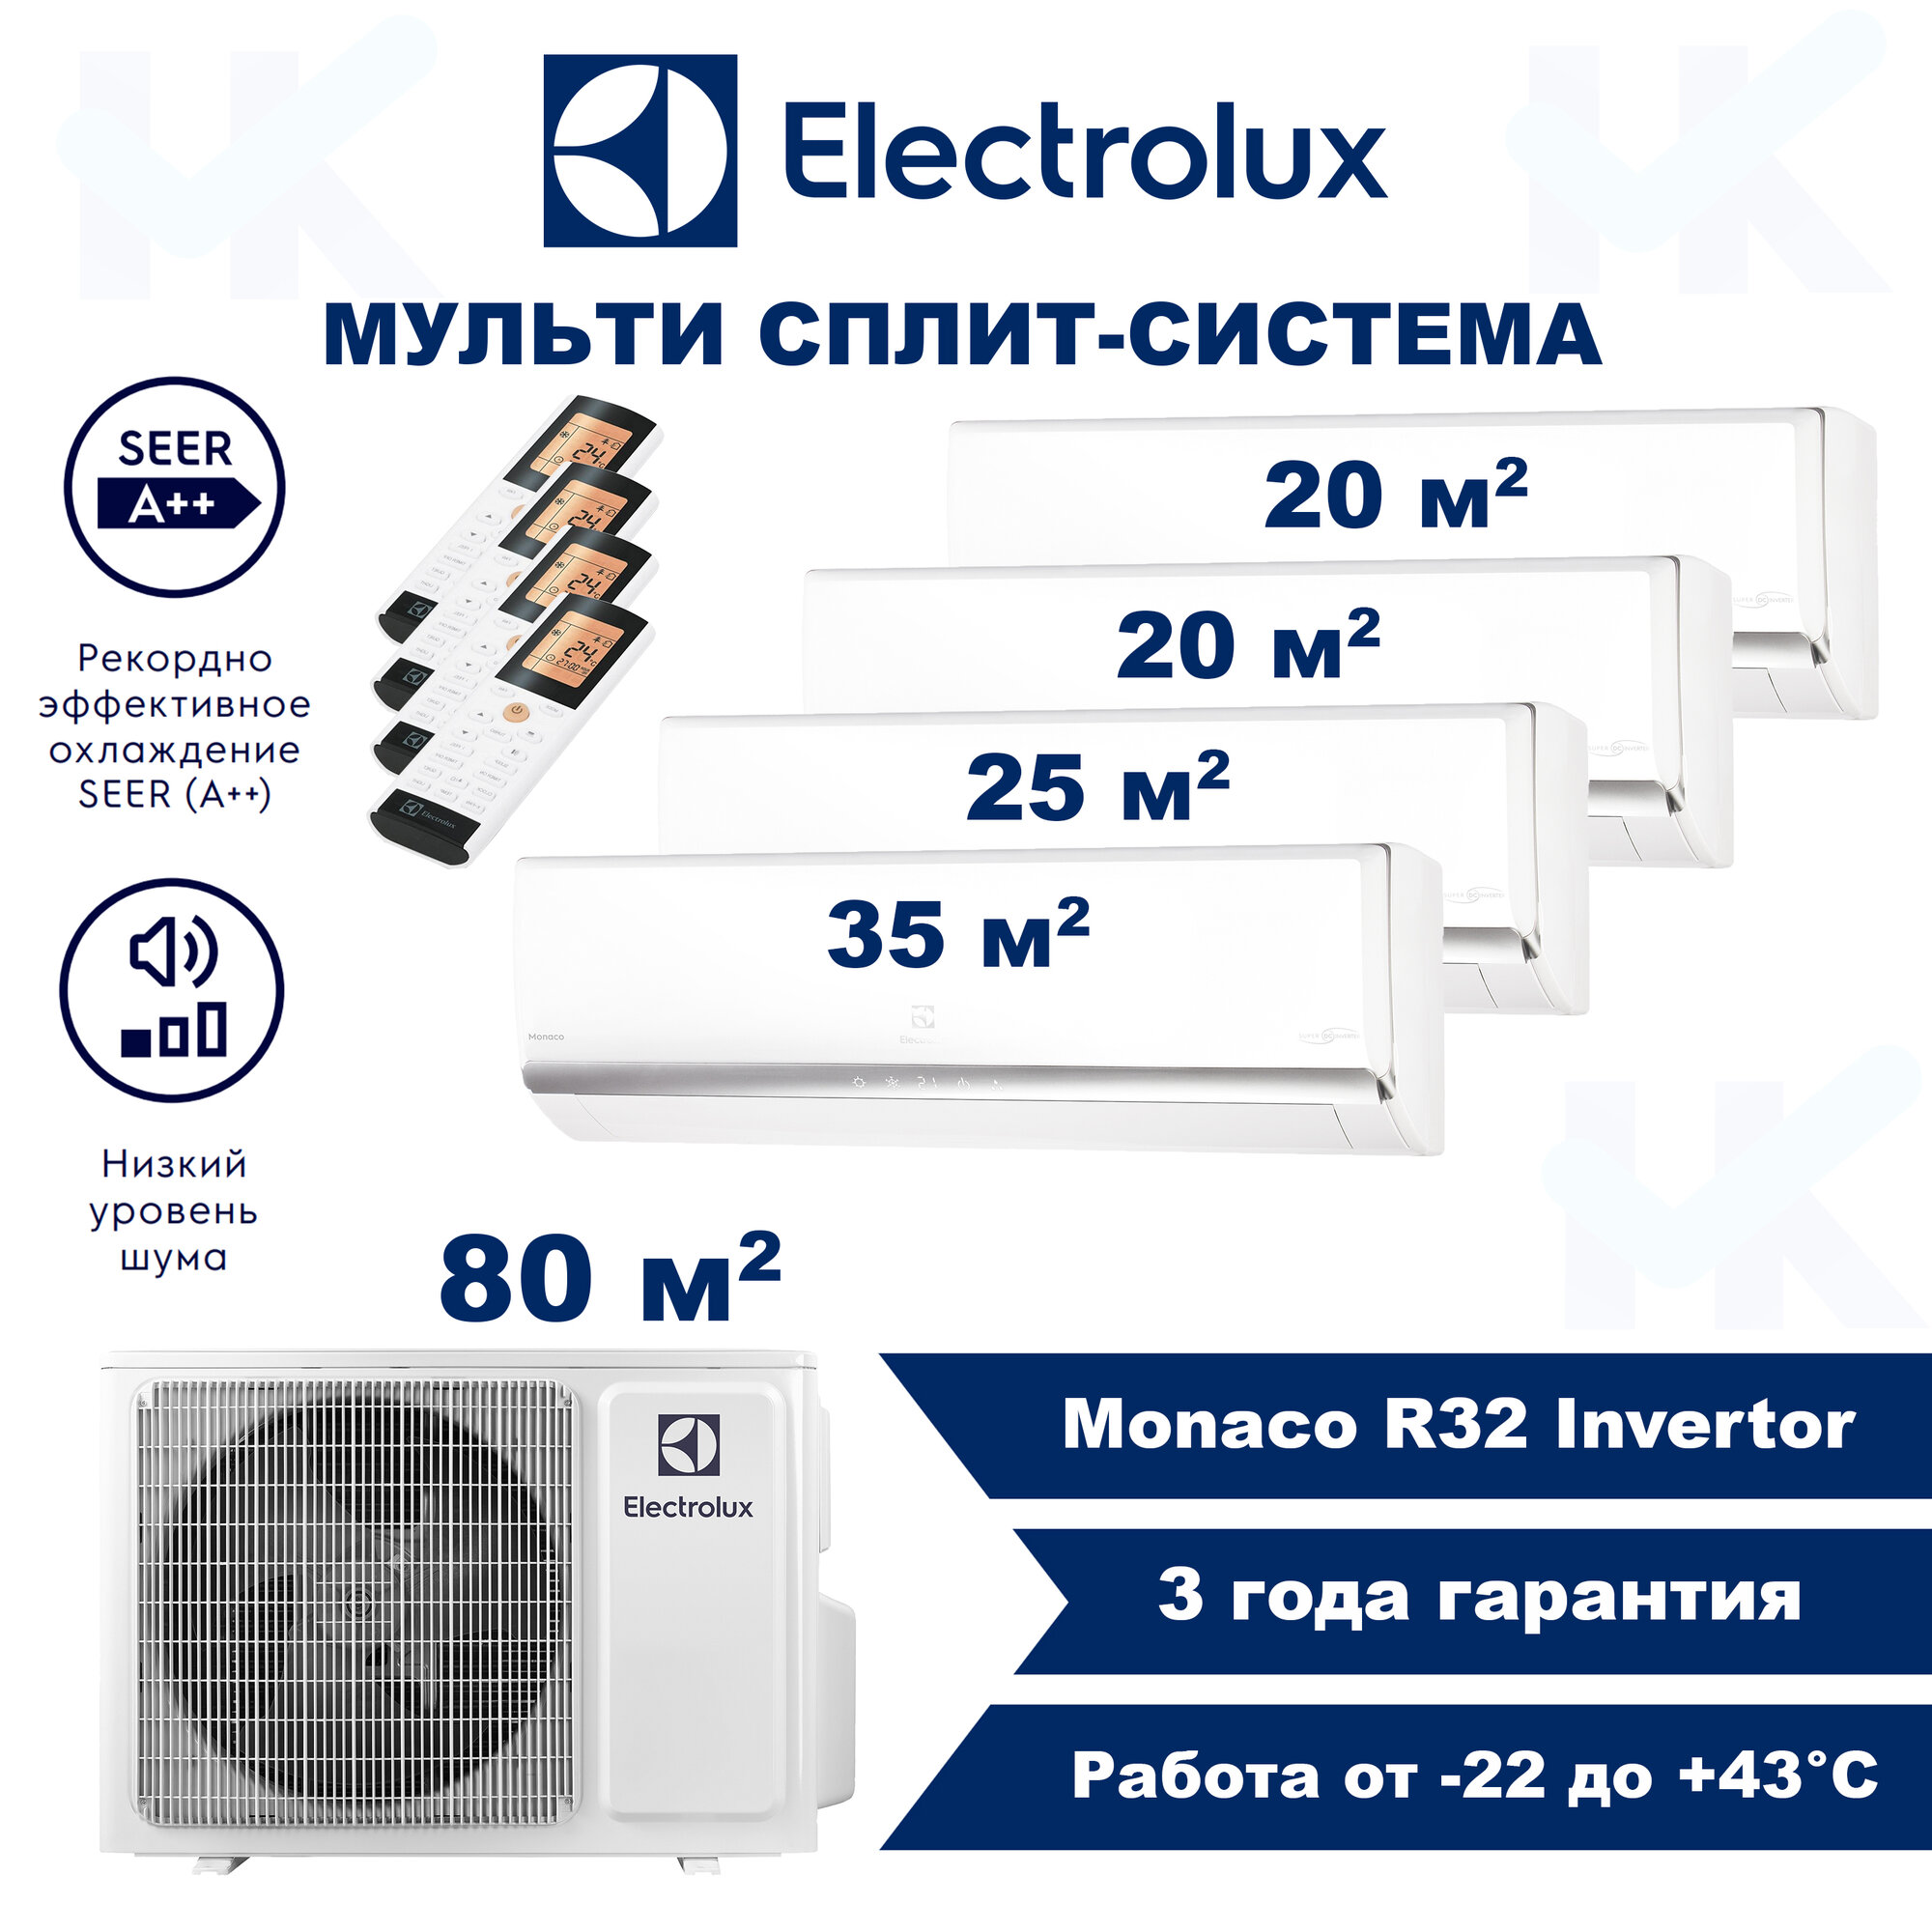 Инверторная мульти сплит-система ELECTROLUX серии Monaco на 4 комнаты (20 м2 + 20 м2 + 25 м2 + 35 м2) с наружным блоком 80 м2, Попеременная работа